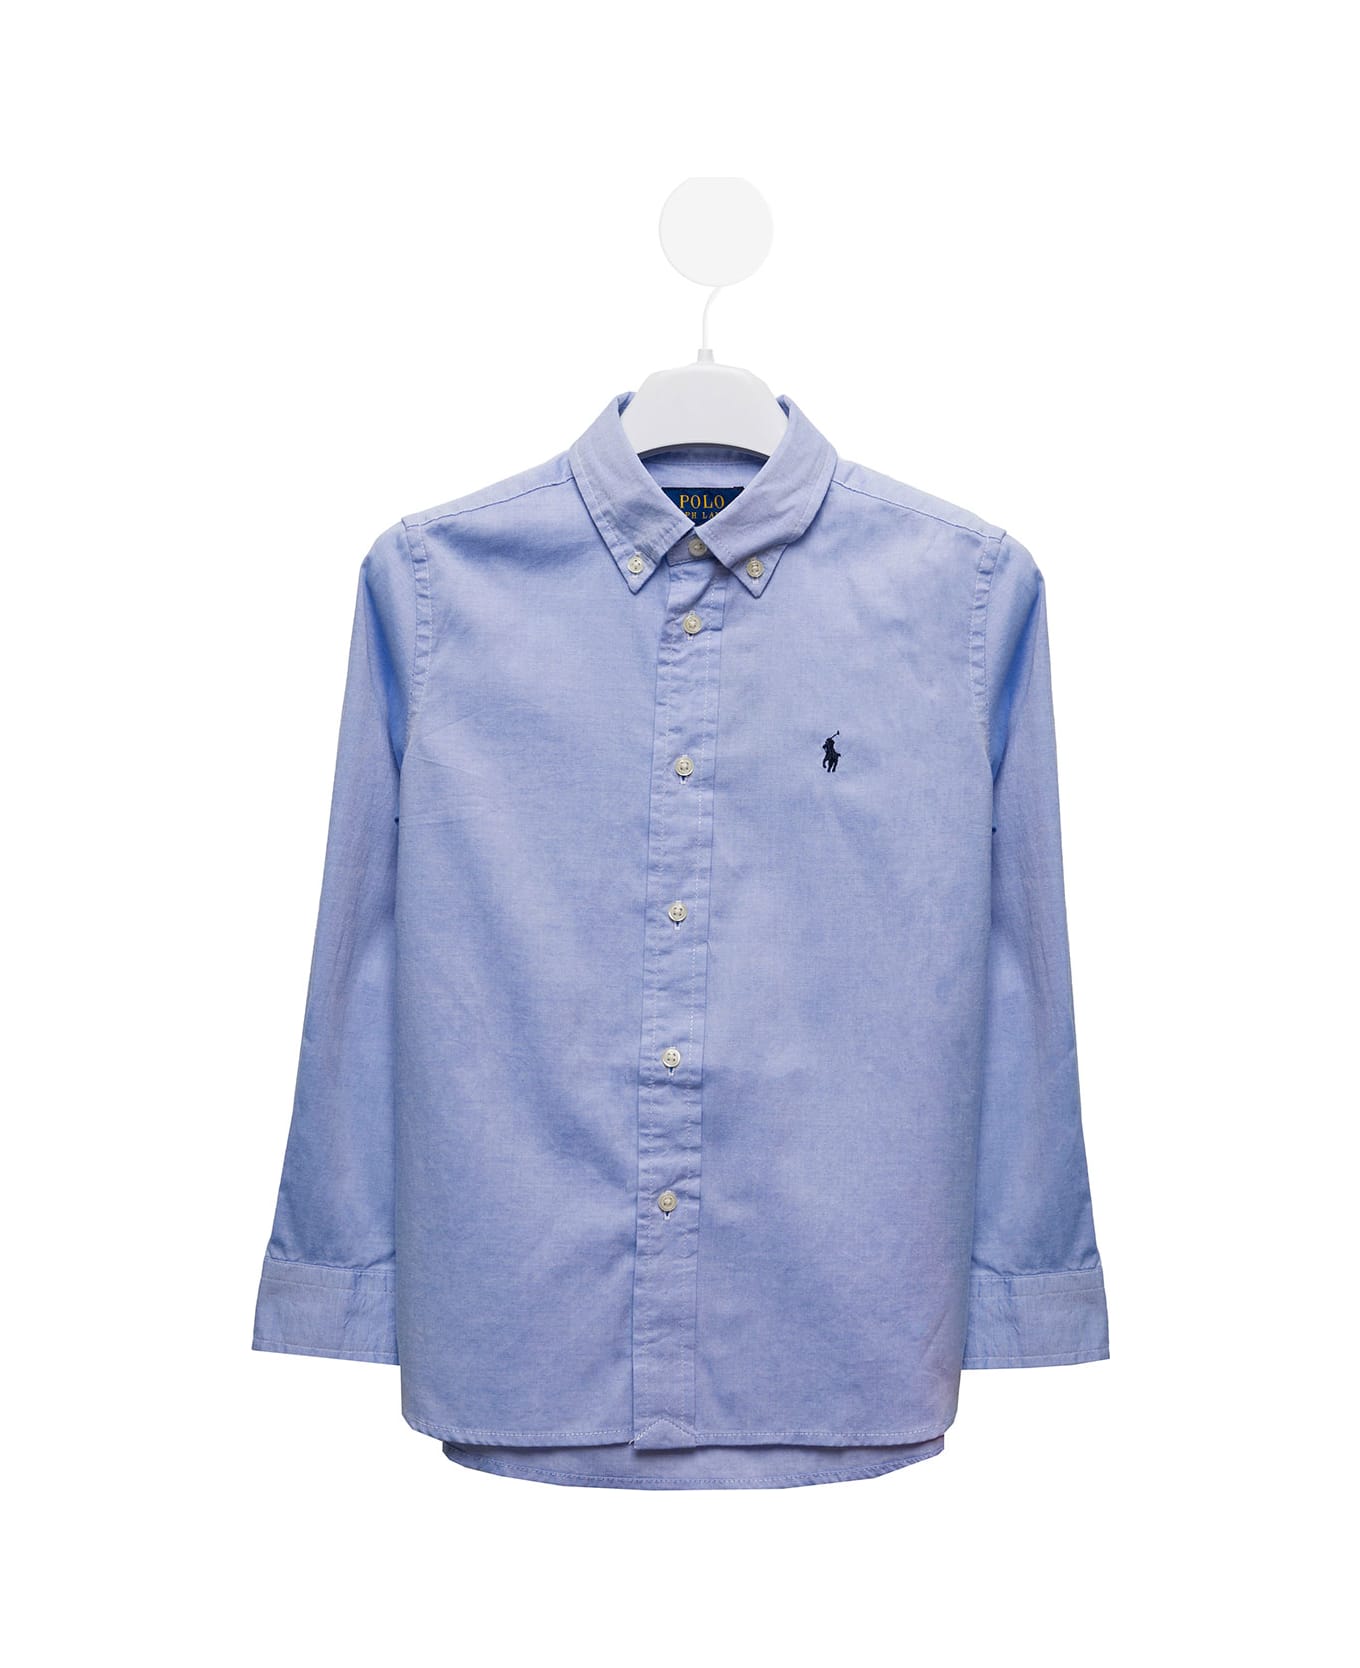 Polo Ralph Lauren Light Blue Cotton Poplin Shirt With Logo Polo Ralph Lauren Kids Boy - Blu